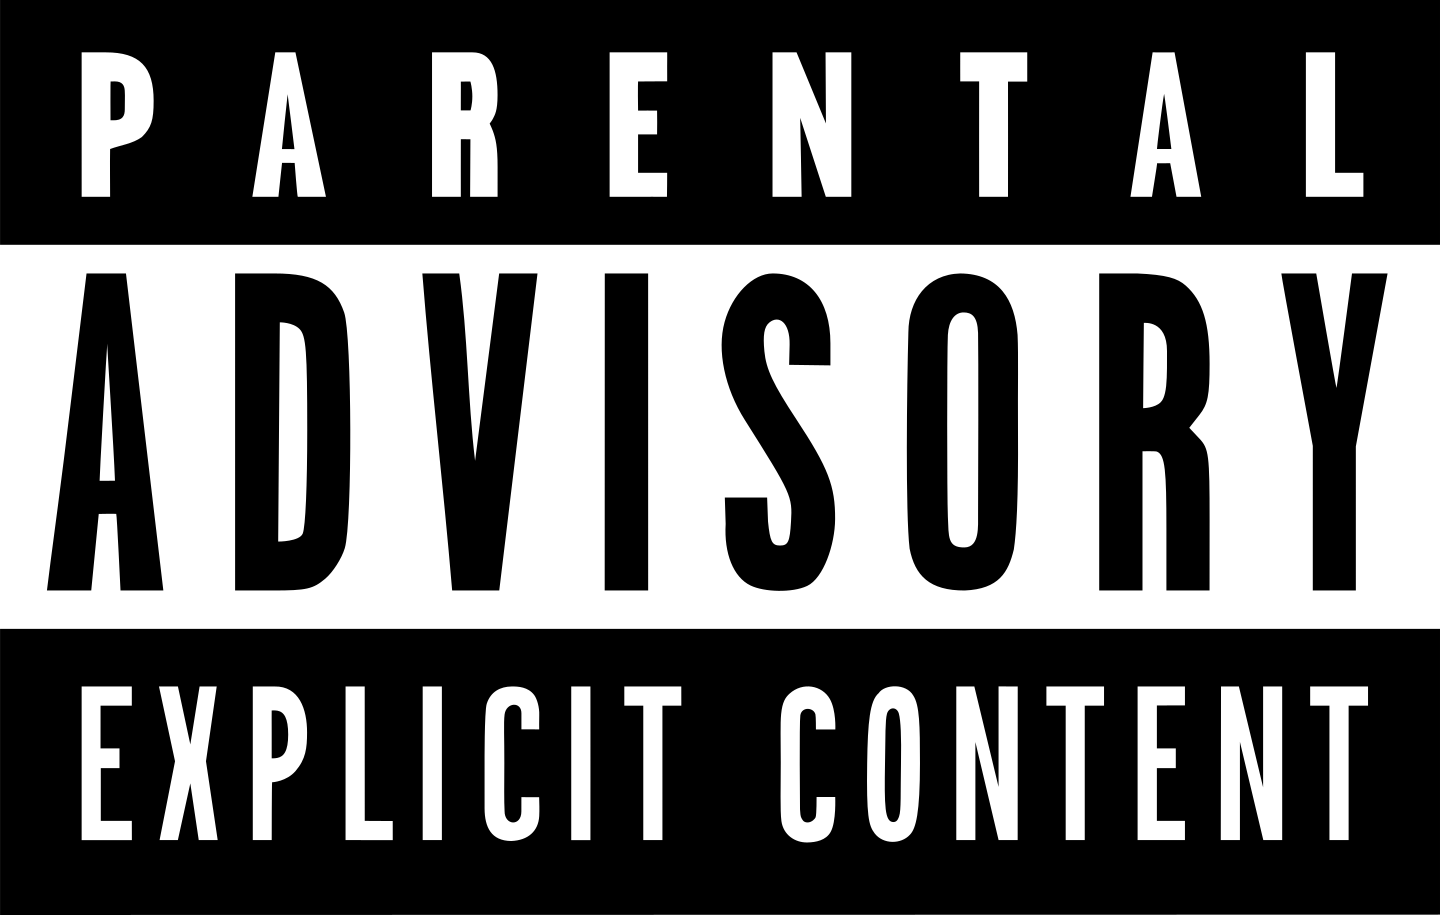 parental advisory explicit content logo 2 - Parental Advisory Explicit Content Logo